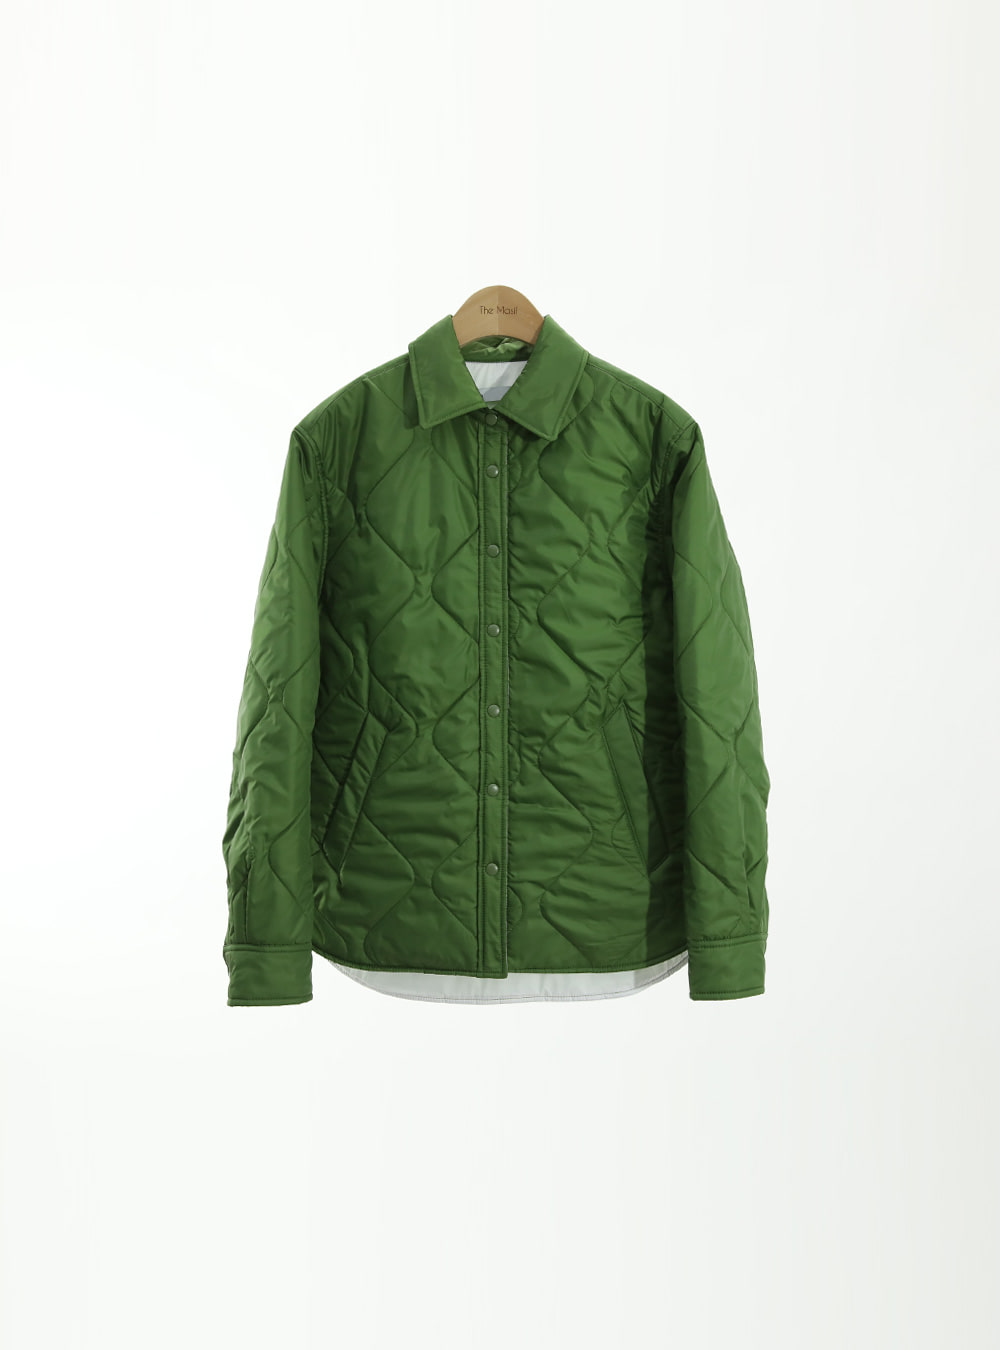 OJ 401998 2온스 퀼팅 셔츠형 재킷